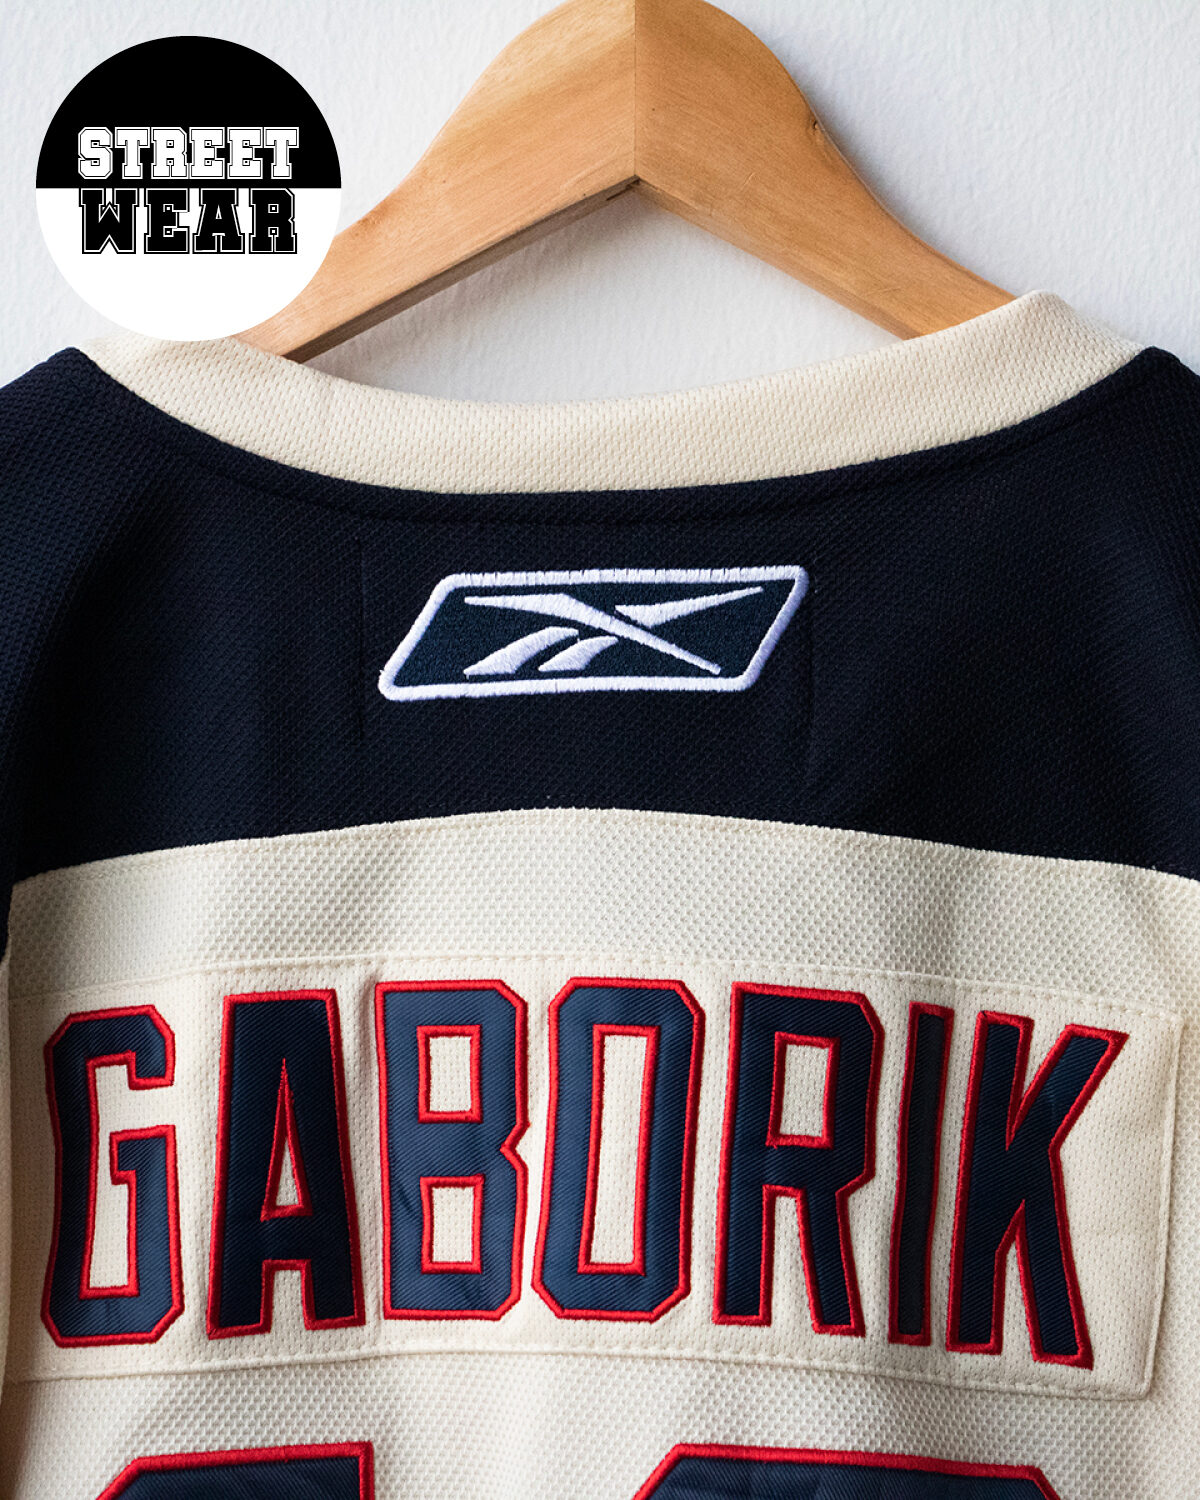 Reebok - Casacca hockey New York Rangers